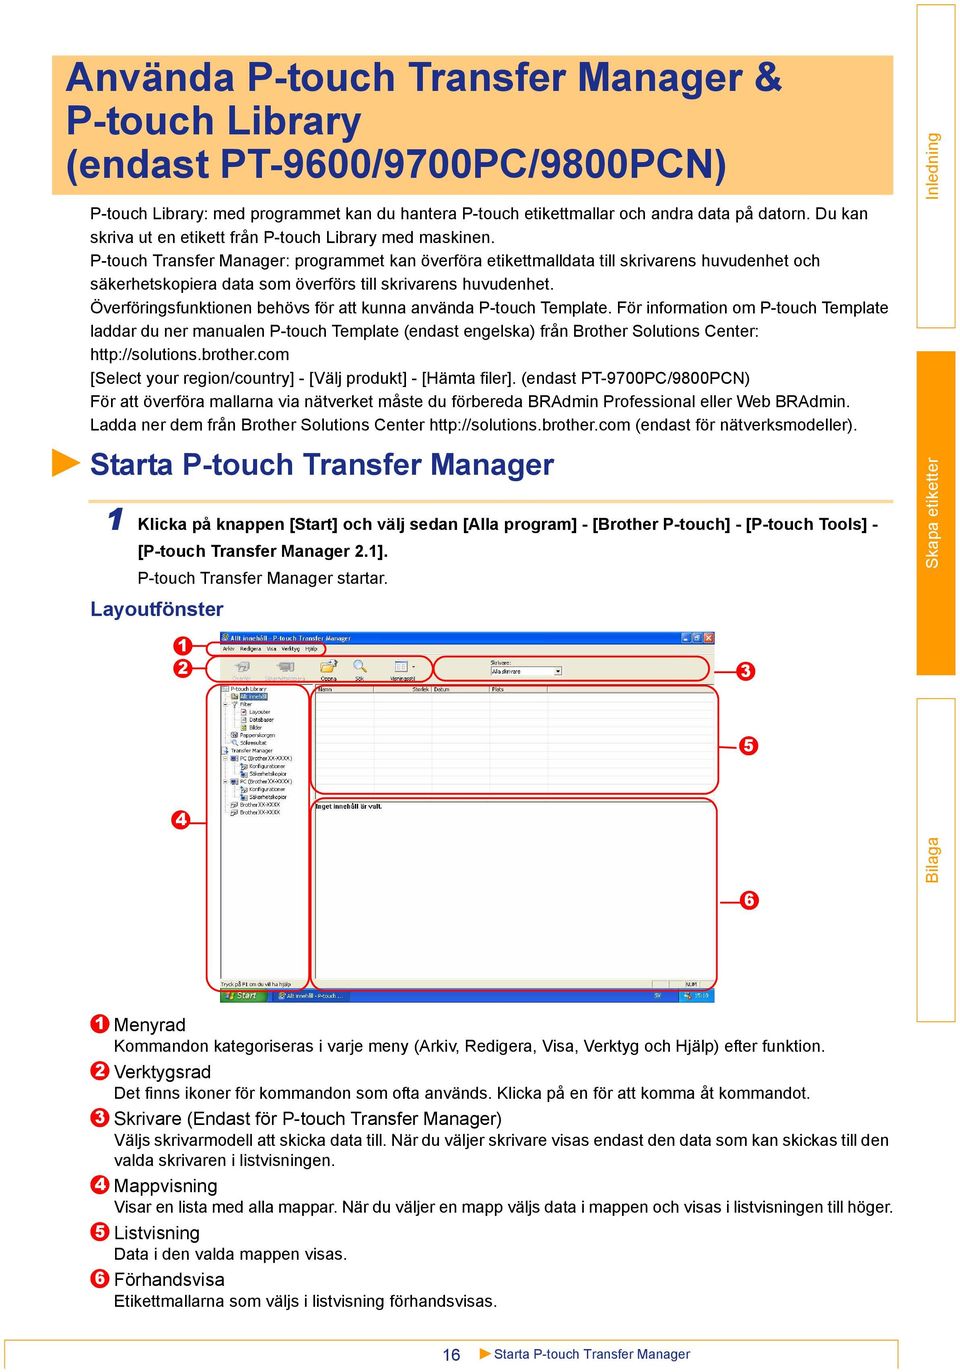 P-touch Transfer Manager: programmet kan överföra etikettmalldata till skrivarens huvudenhet och säkerhetskopiera data som överförs till skrivarens huvudenhet.